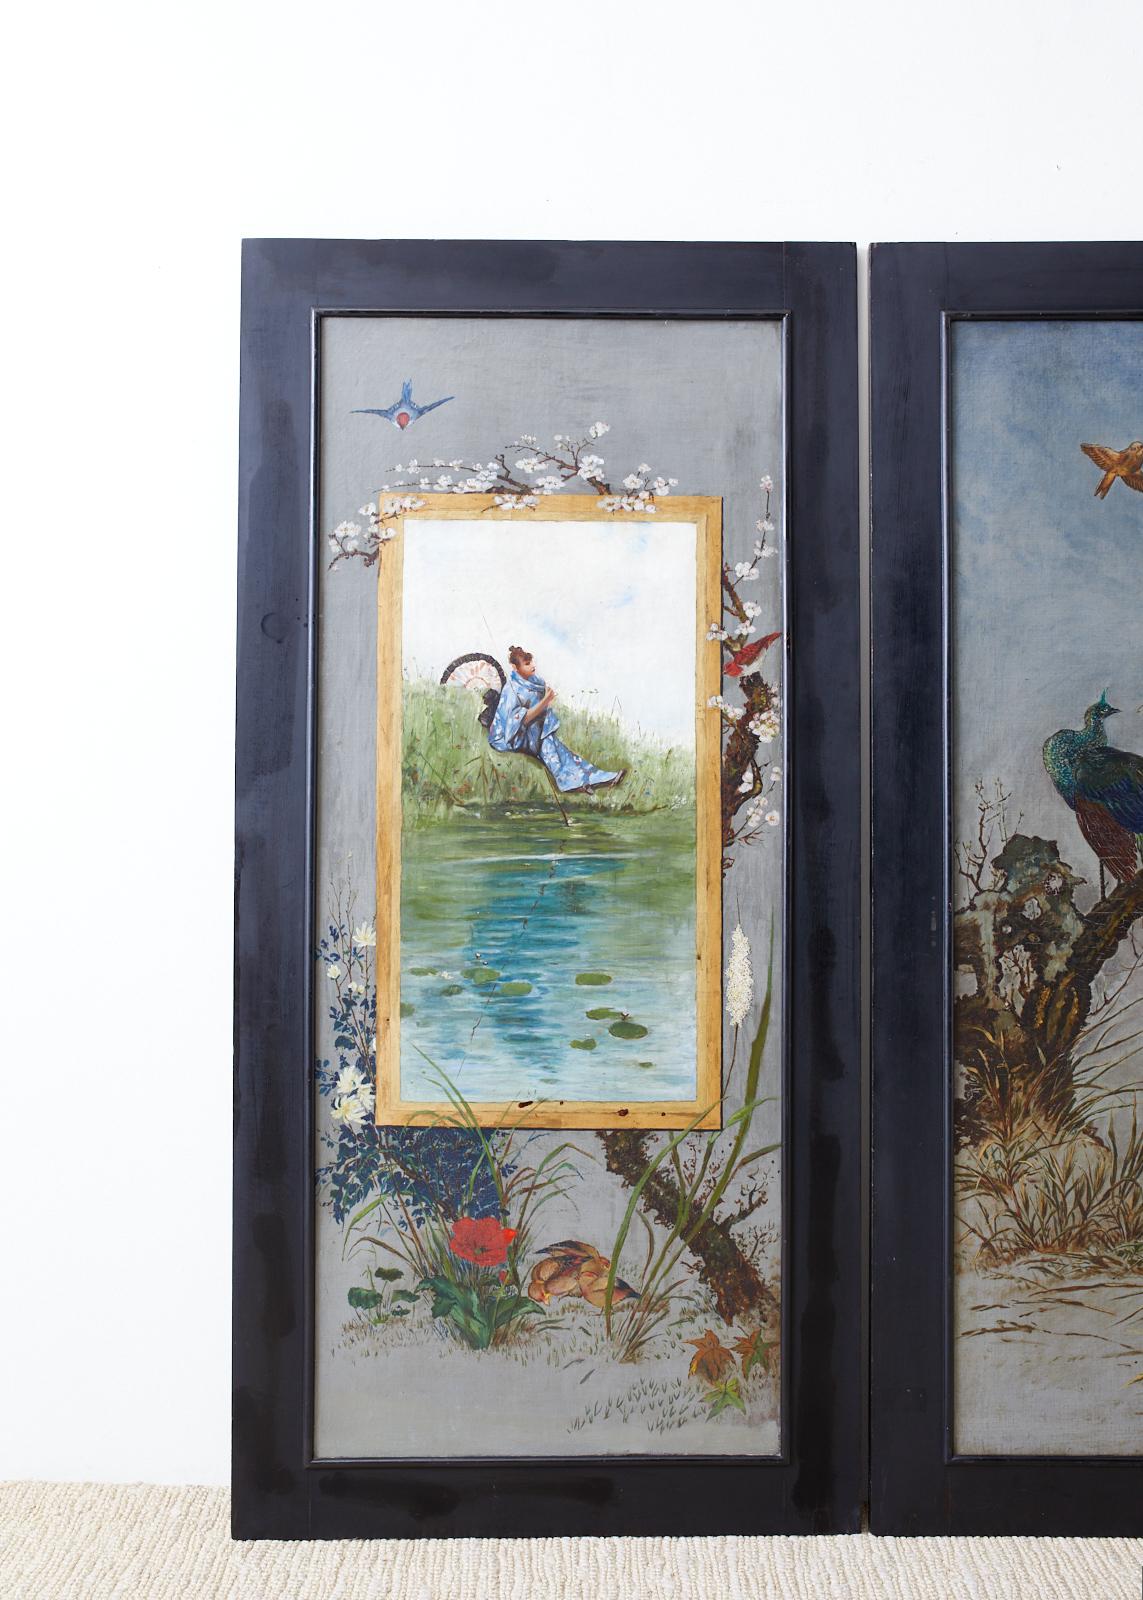 Magnifique ensemble de trois peintures françaises à l'huile sur toile réalisées à l'époque du renouveau de la chinoiserie au XIXe siècle, en Europe. La peinture centrale représente un grand paon dans un arbre au-dessus d'une paire de coqs avec des